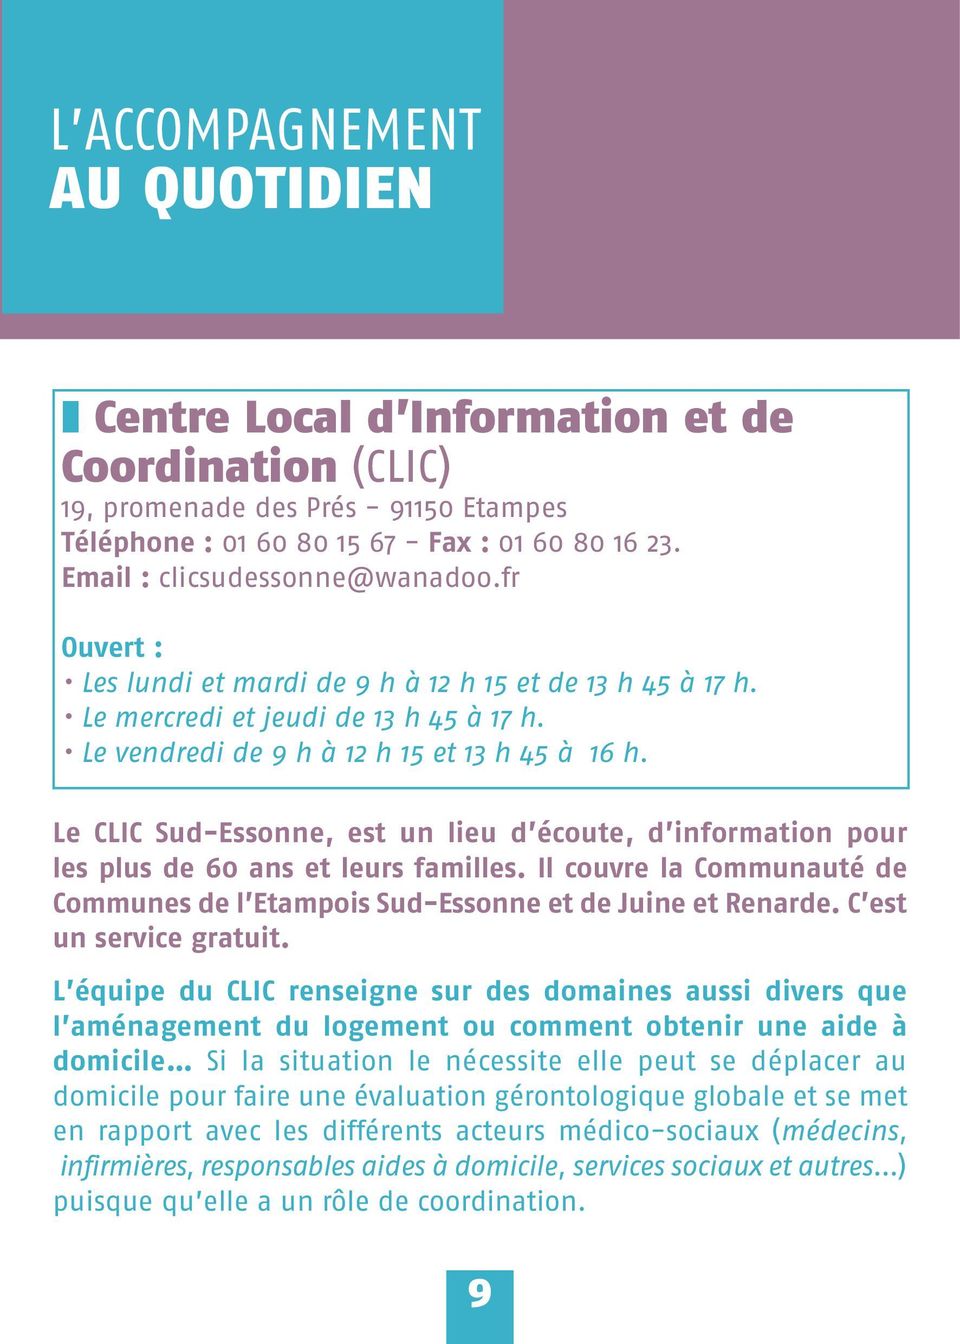 Le CLIC Sud-Essonne, est un lieu d écoute, d information pour les plus de 60 ans et leurs familles. Il couvre la Communauté de Communes de l Etampois Sud-Essonne et de Juine et Renarde.